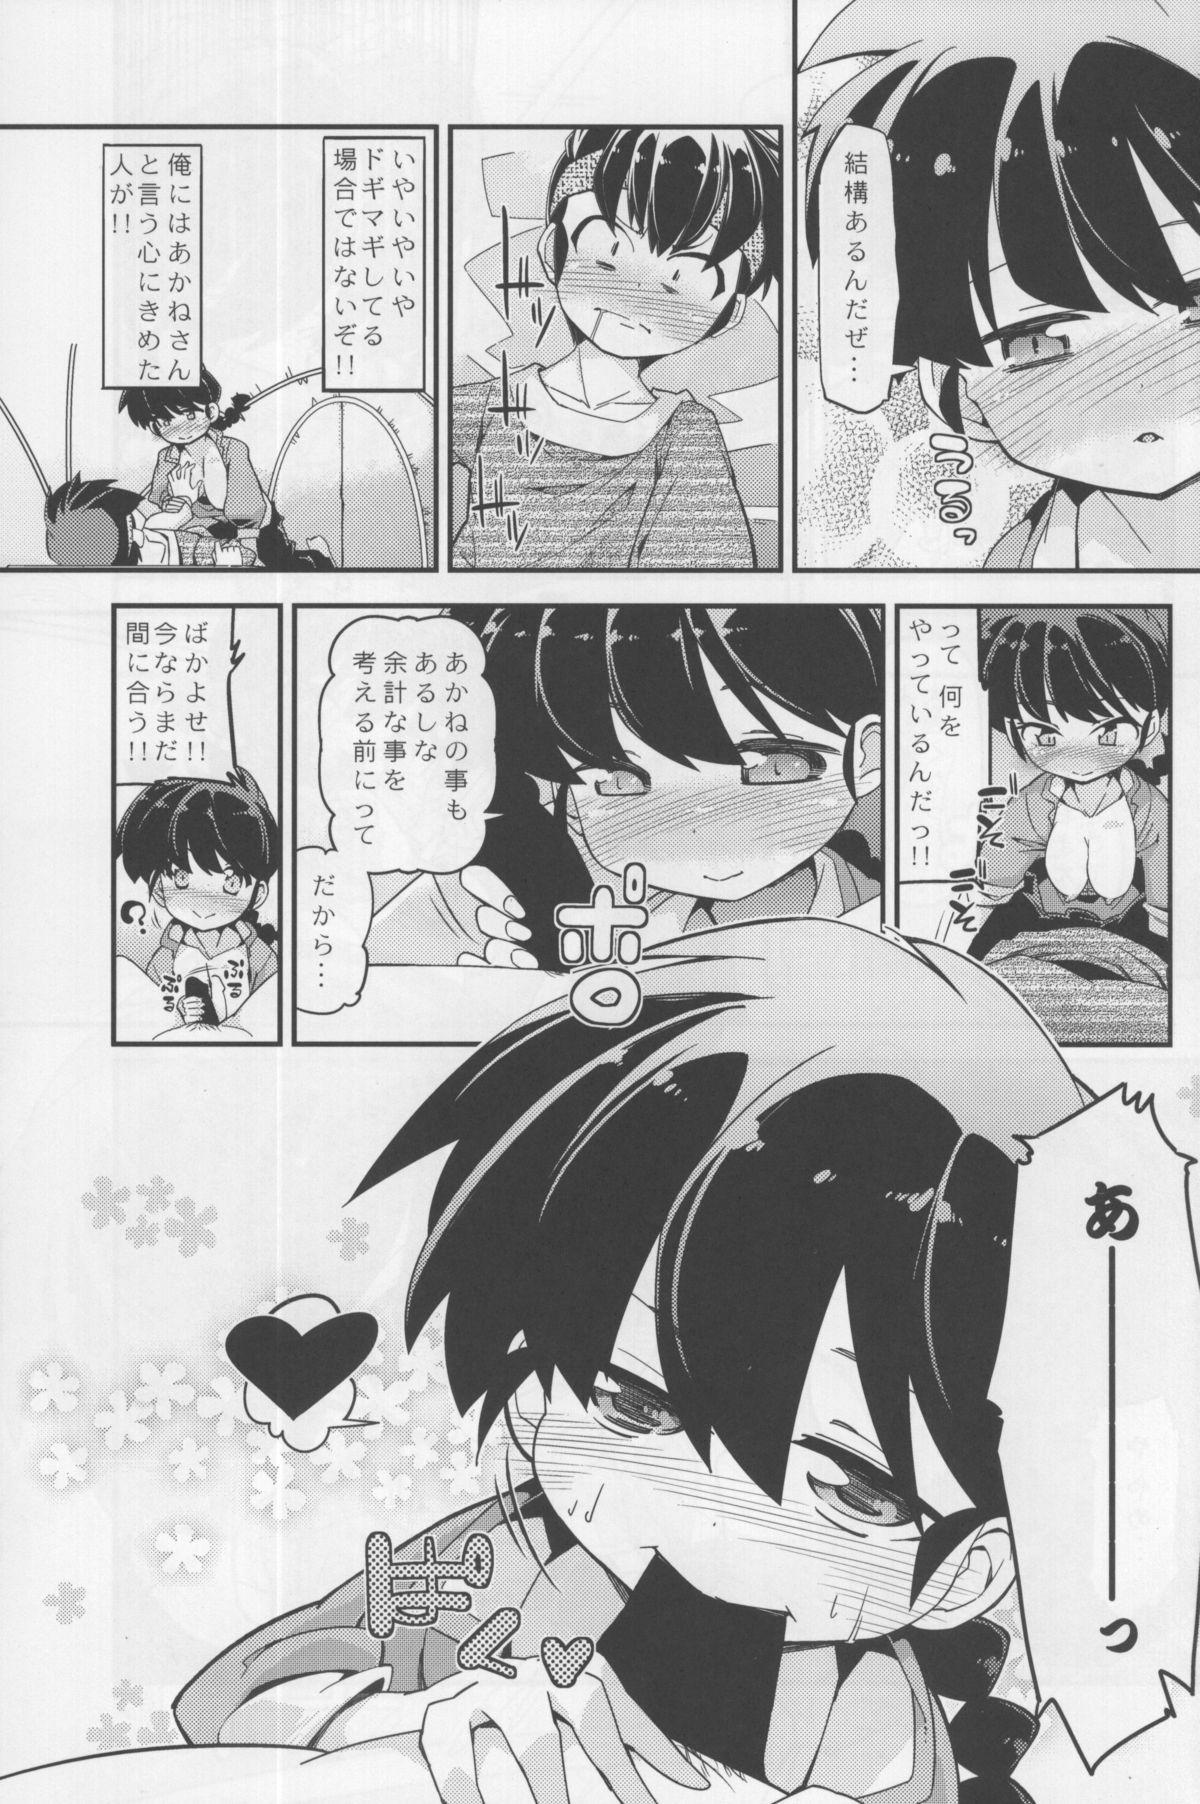 Weird Koi no Tsurizao de Tsurarete Shimata Ranma ga Ryouga to Nyan Nyan suru Manga - Ranma 12 Sapphic Erotica - Page 7